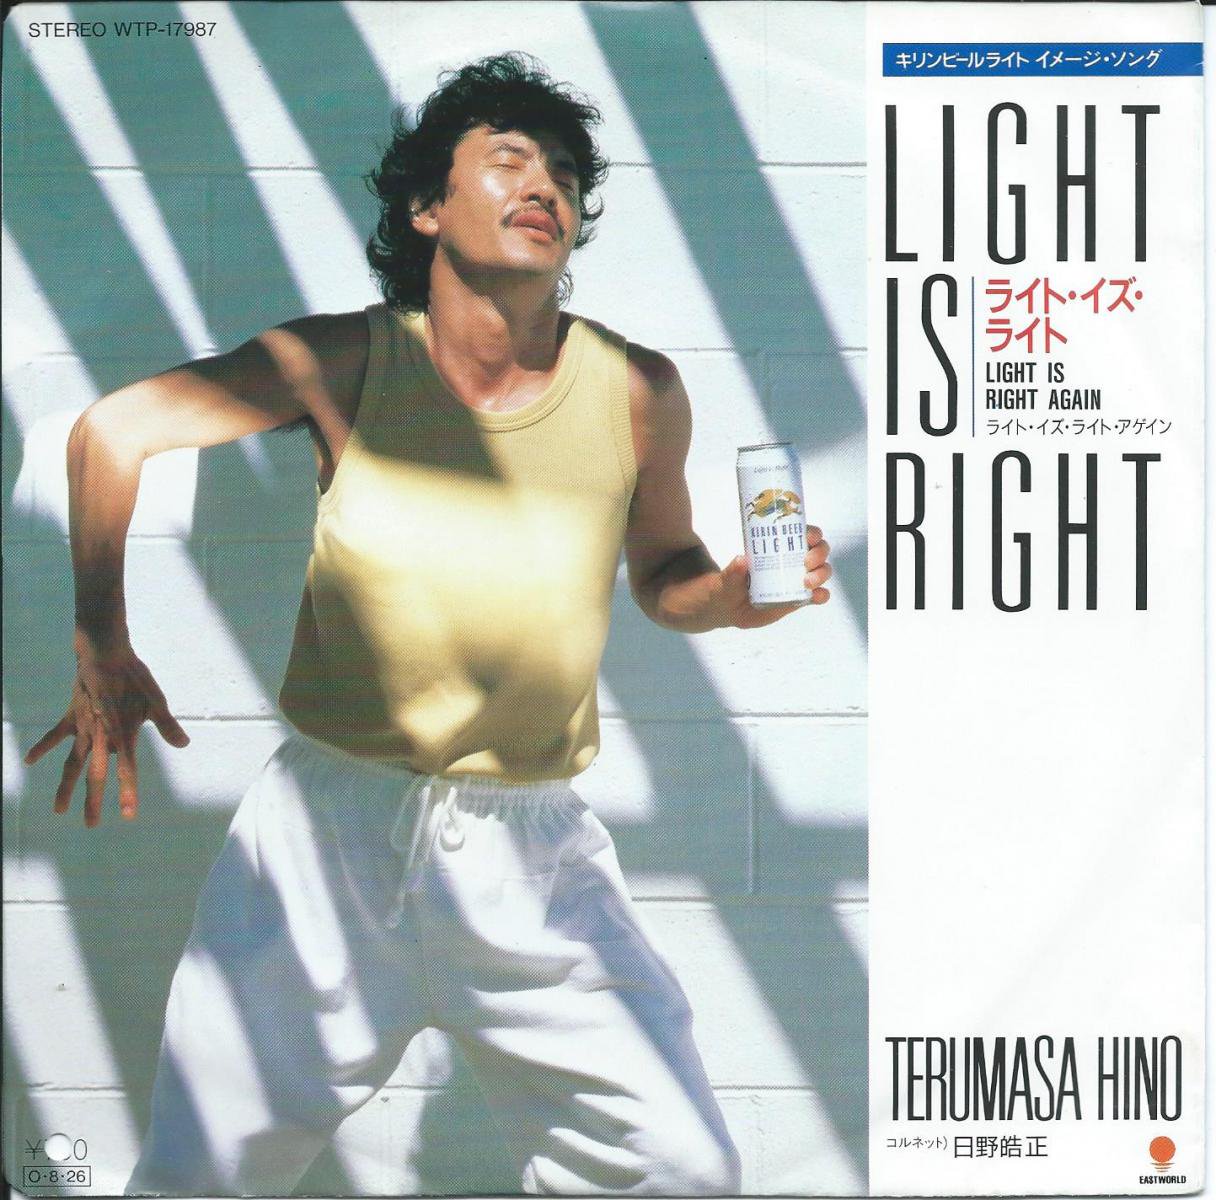 日野皓正 TERUMASA HINO / ライト・イズ・ライト LIGHT IS RIGHT / ライト・イズ・ライト アゲイン LIGHT IS RIGHT AGAIN (7